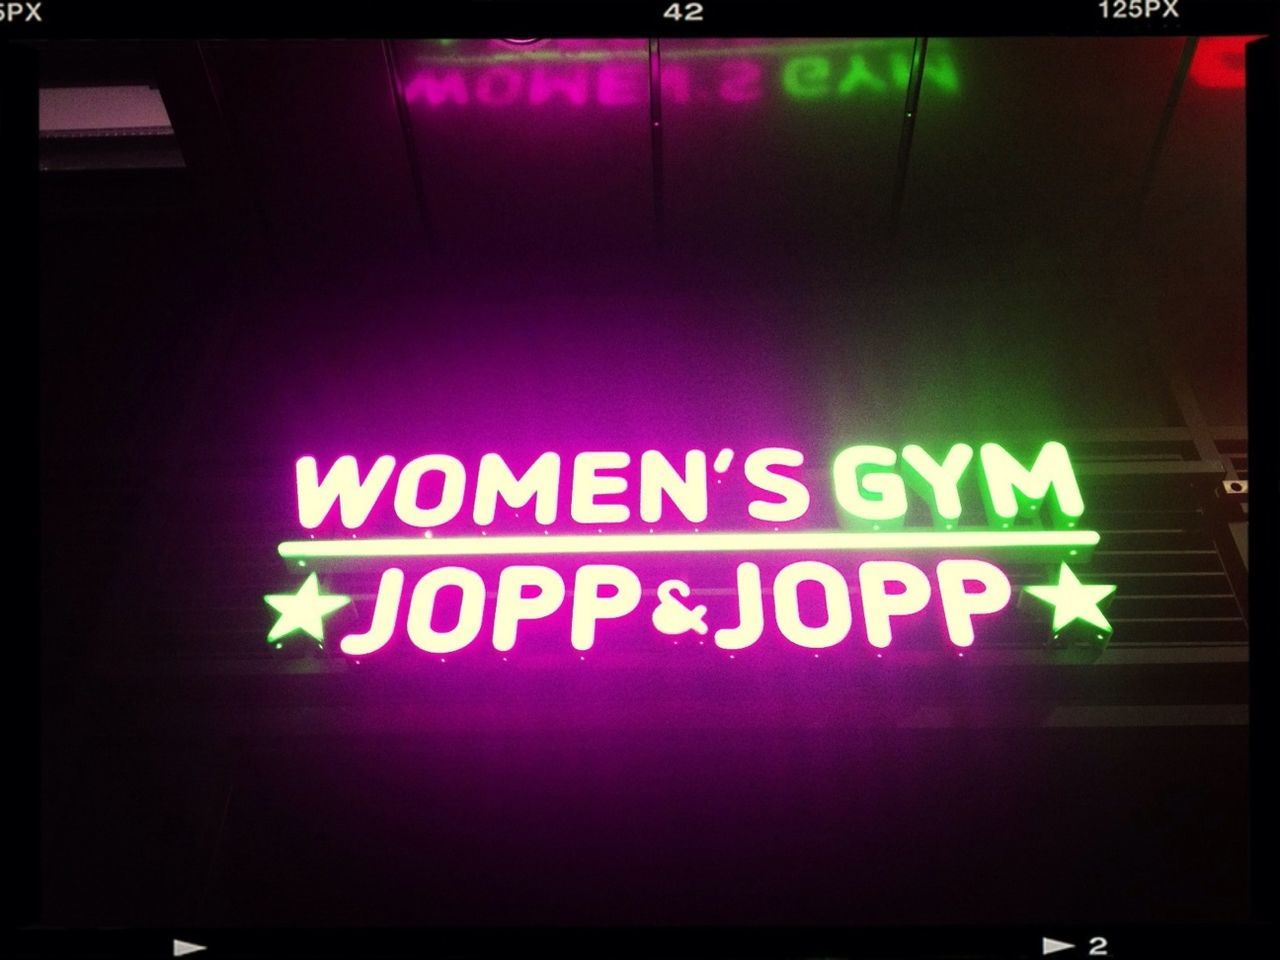 Jopp & Jopp Women's Gym